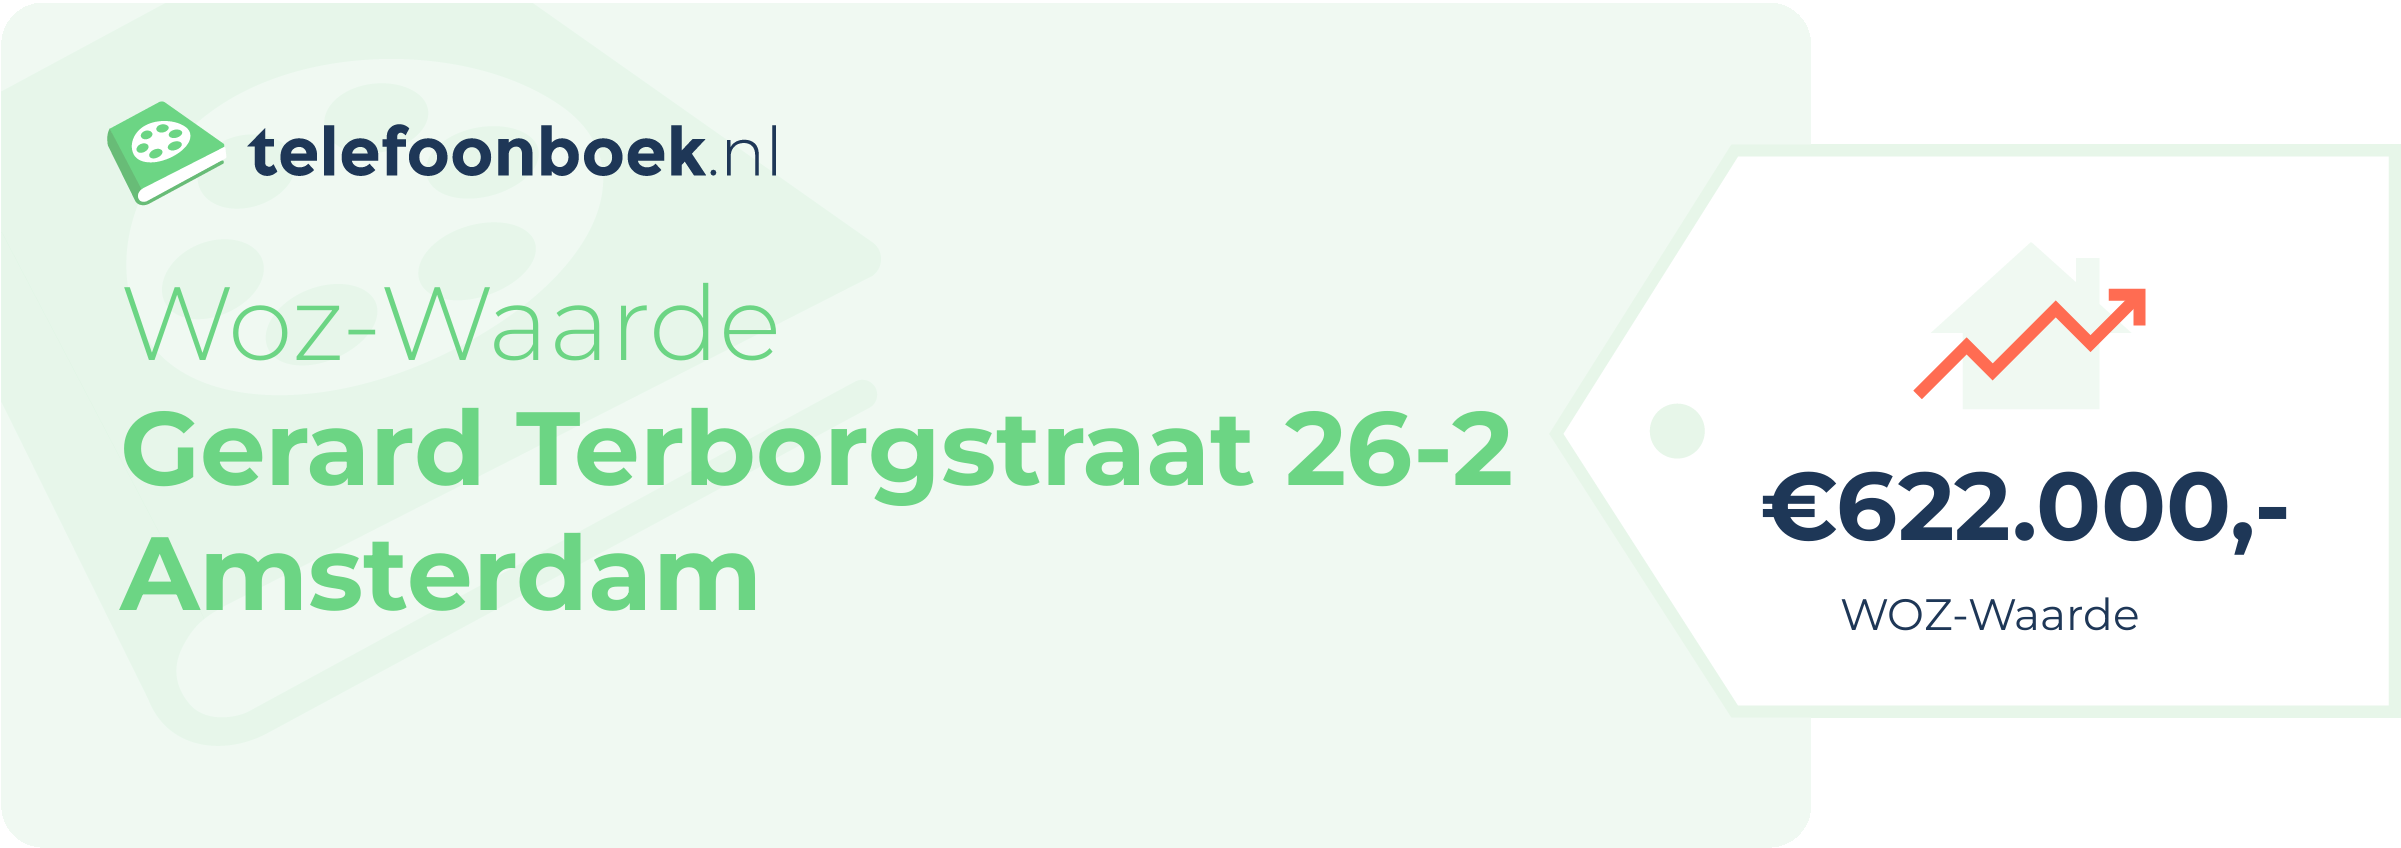 WOZ-waarde Gerard Terborgstraat 26-2 Amsterdam